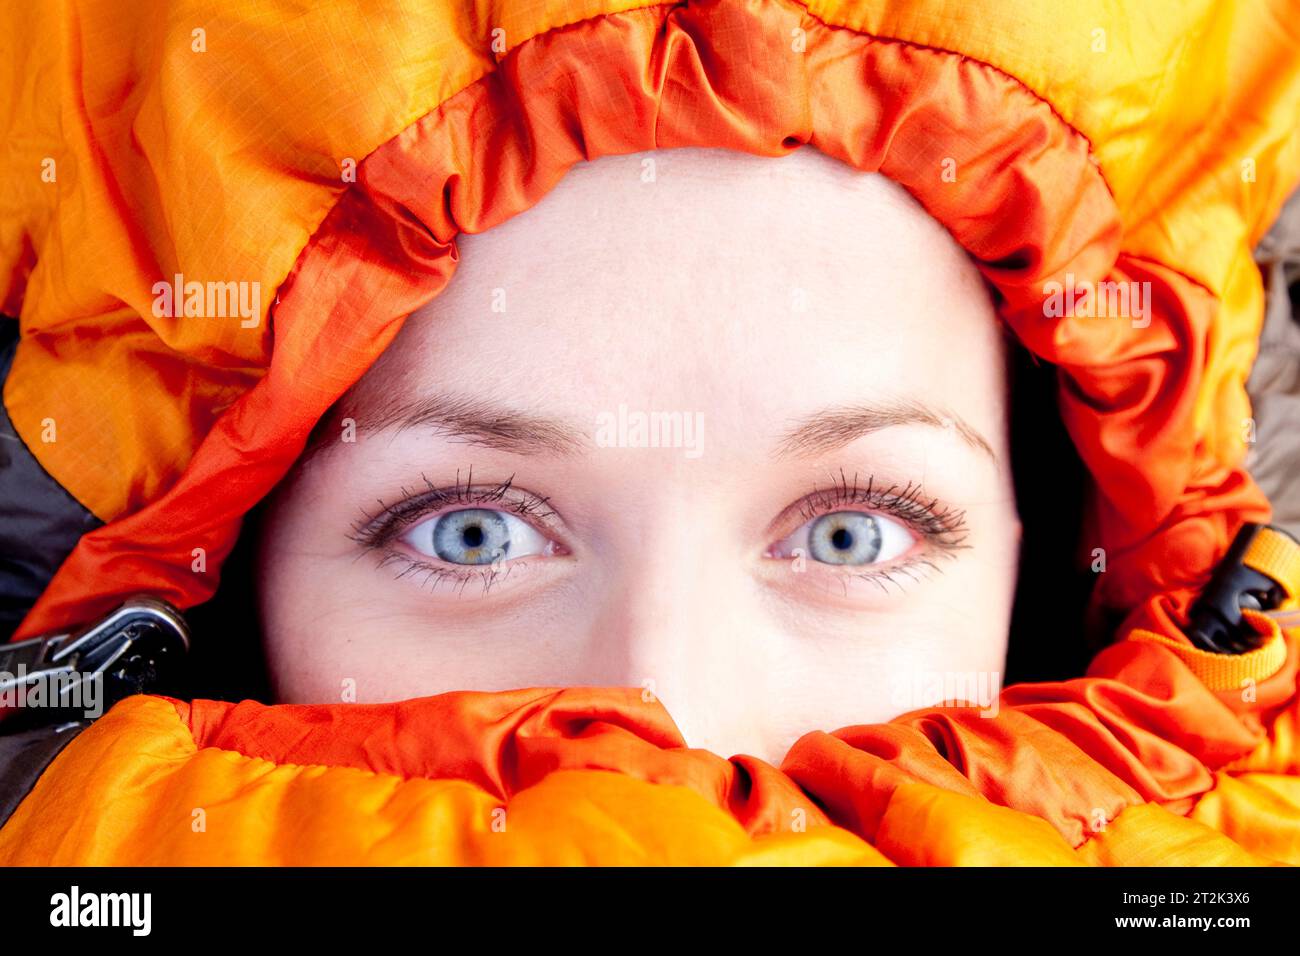 Eine Frau mit hellblauen Augen blickt direkt in die Kamera, während sie fest in ihrem orangefarbenen Schlafsack sitzt. Stockfoto